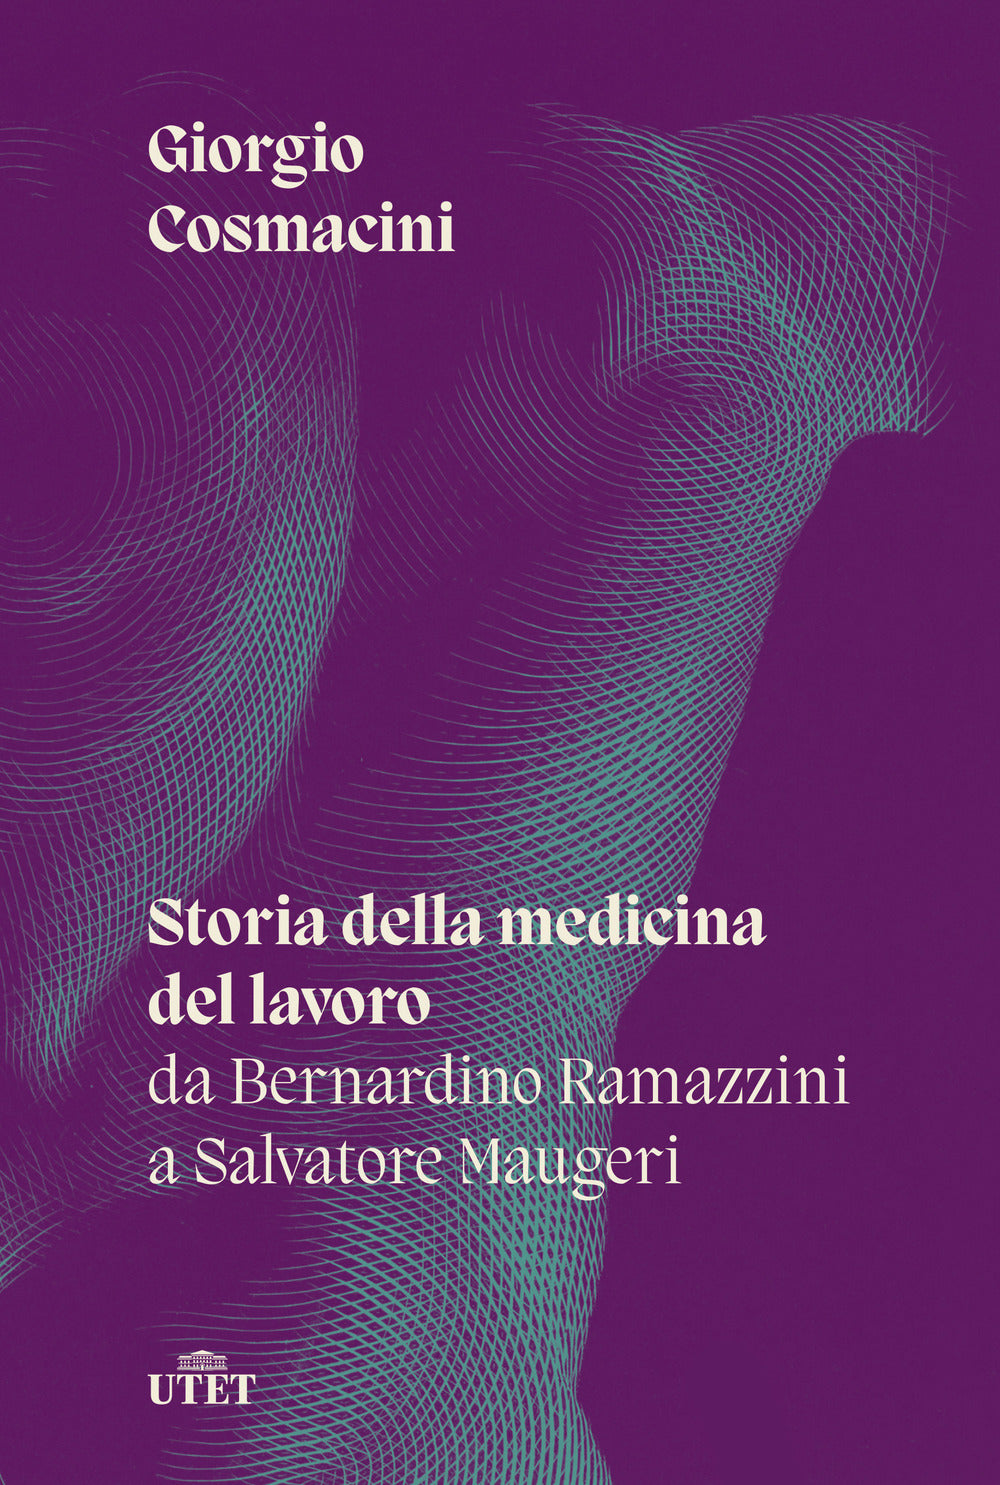 Storia della medicina del lavoro. Da Bernardino Ramazzini a Salvatore Maugeri.